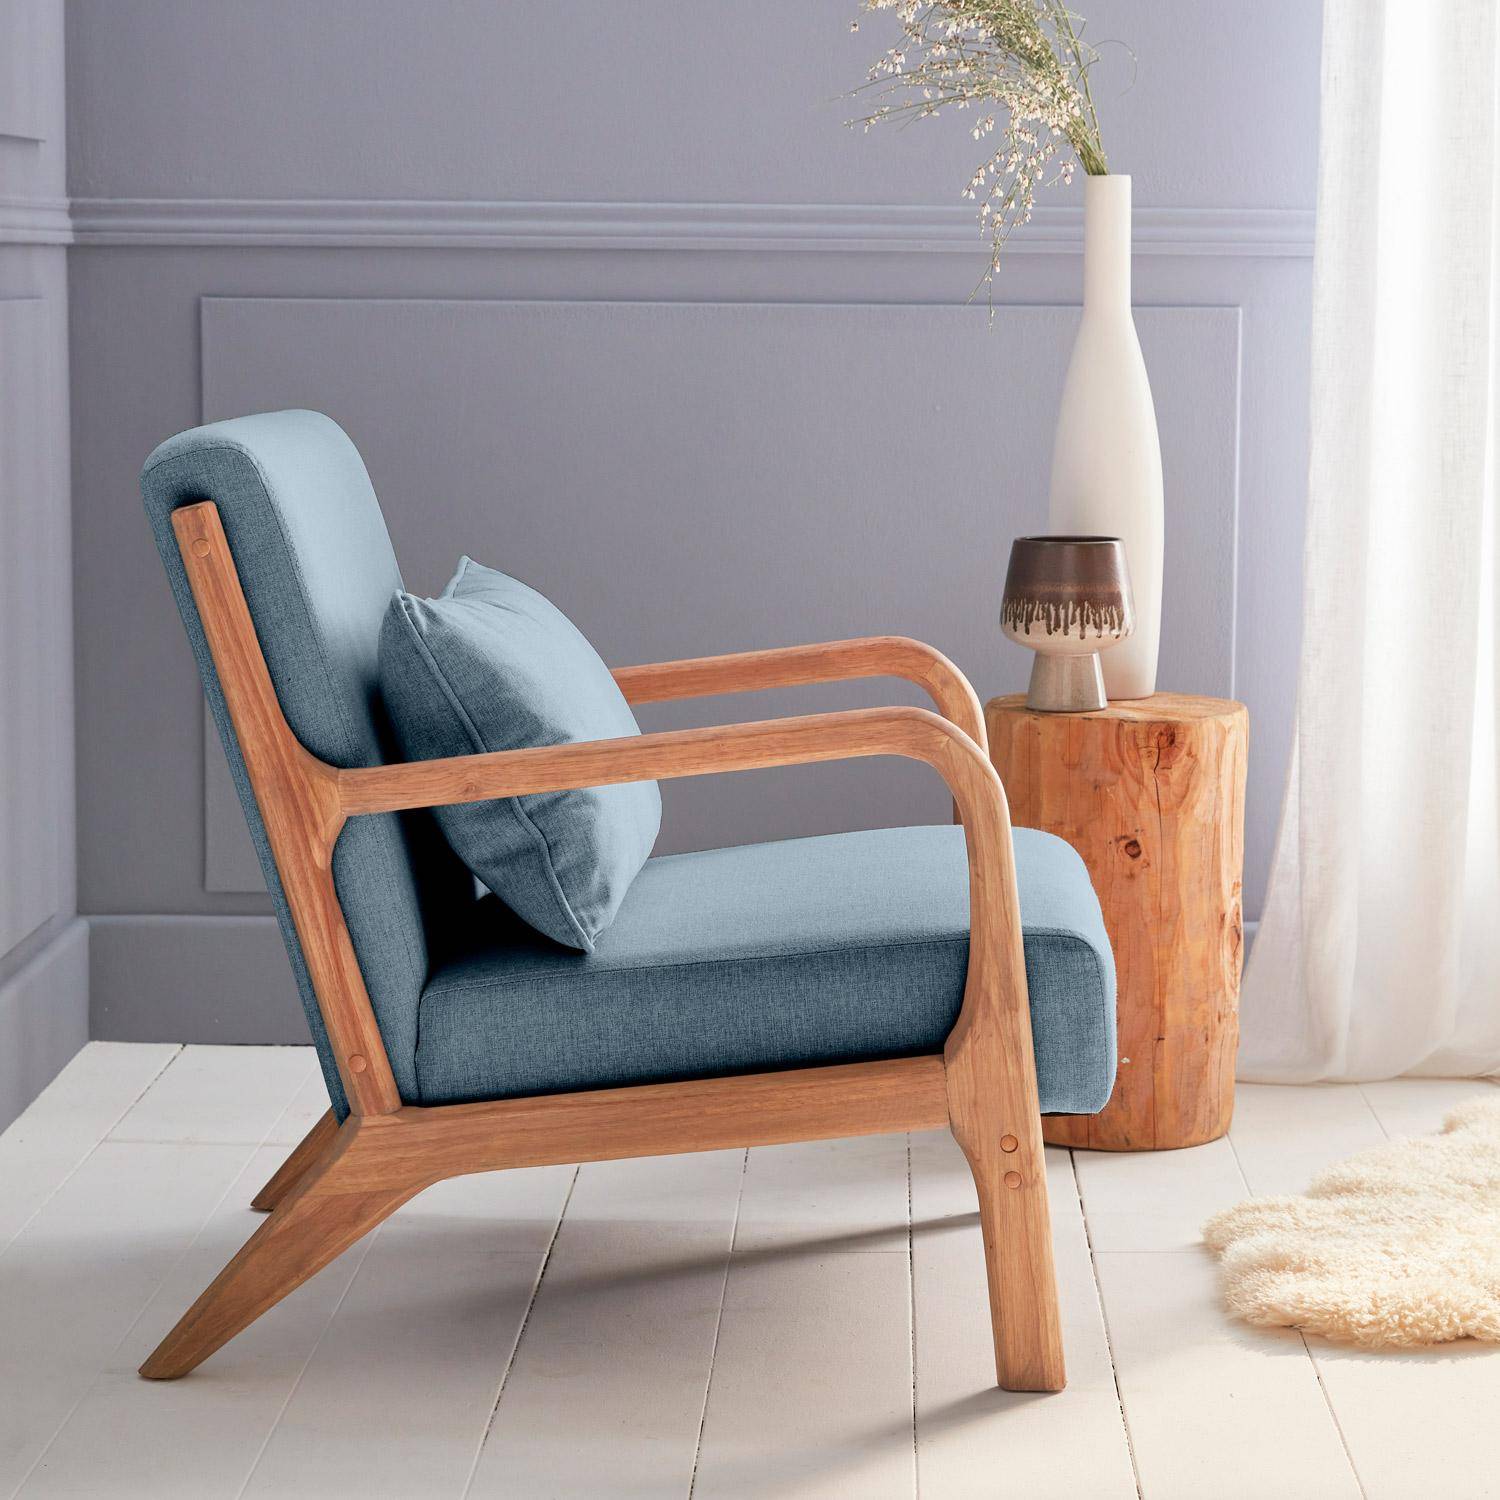 Sillón de diseño en madera y tela, 1 asiento recto fijo, patas de compás escandinavas, asiento cómodo, armazón de madera maciza, azul,sweeek,Photo3